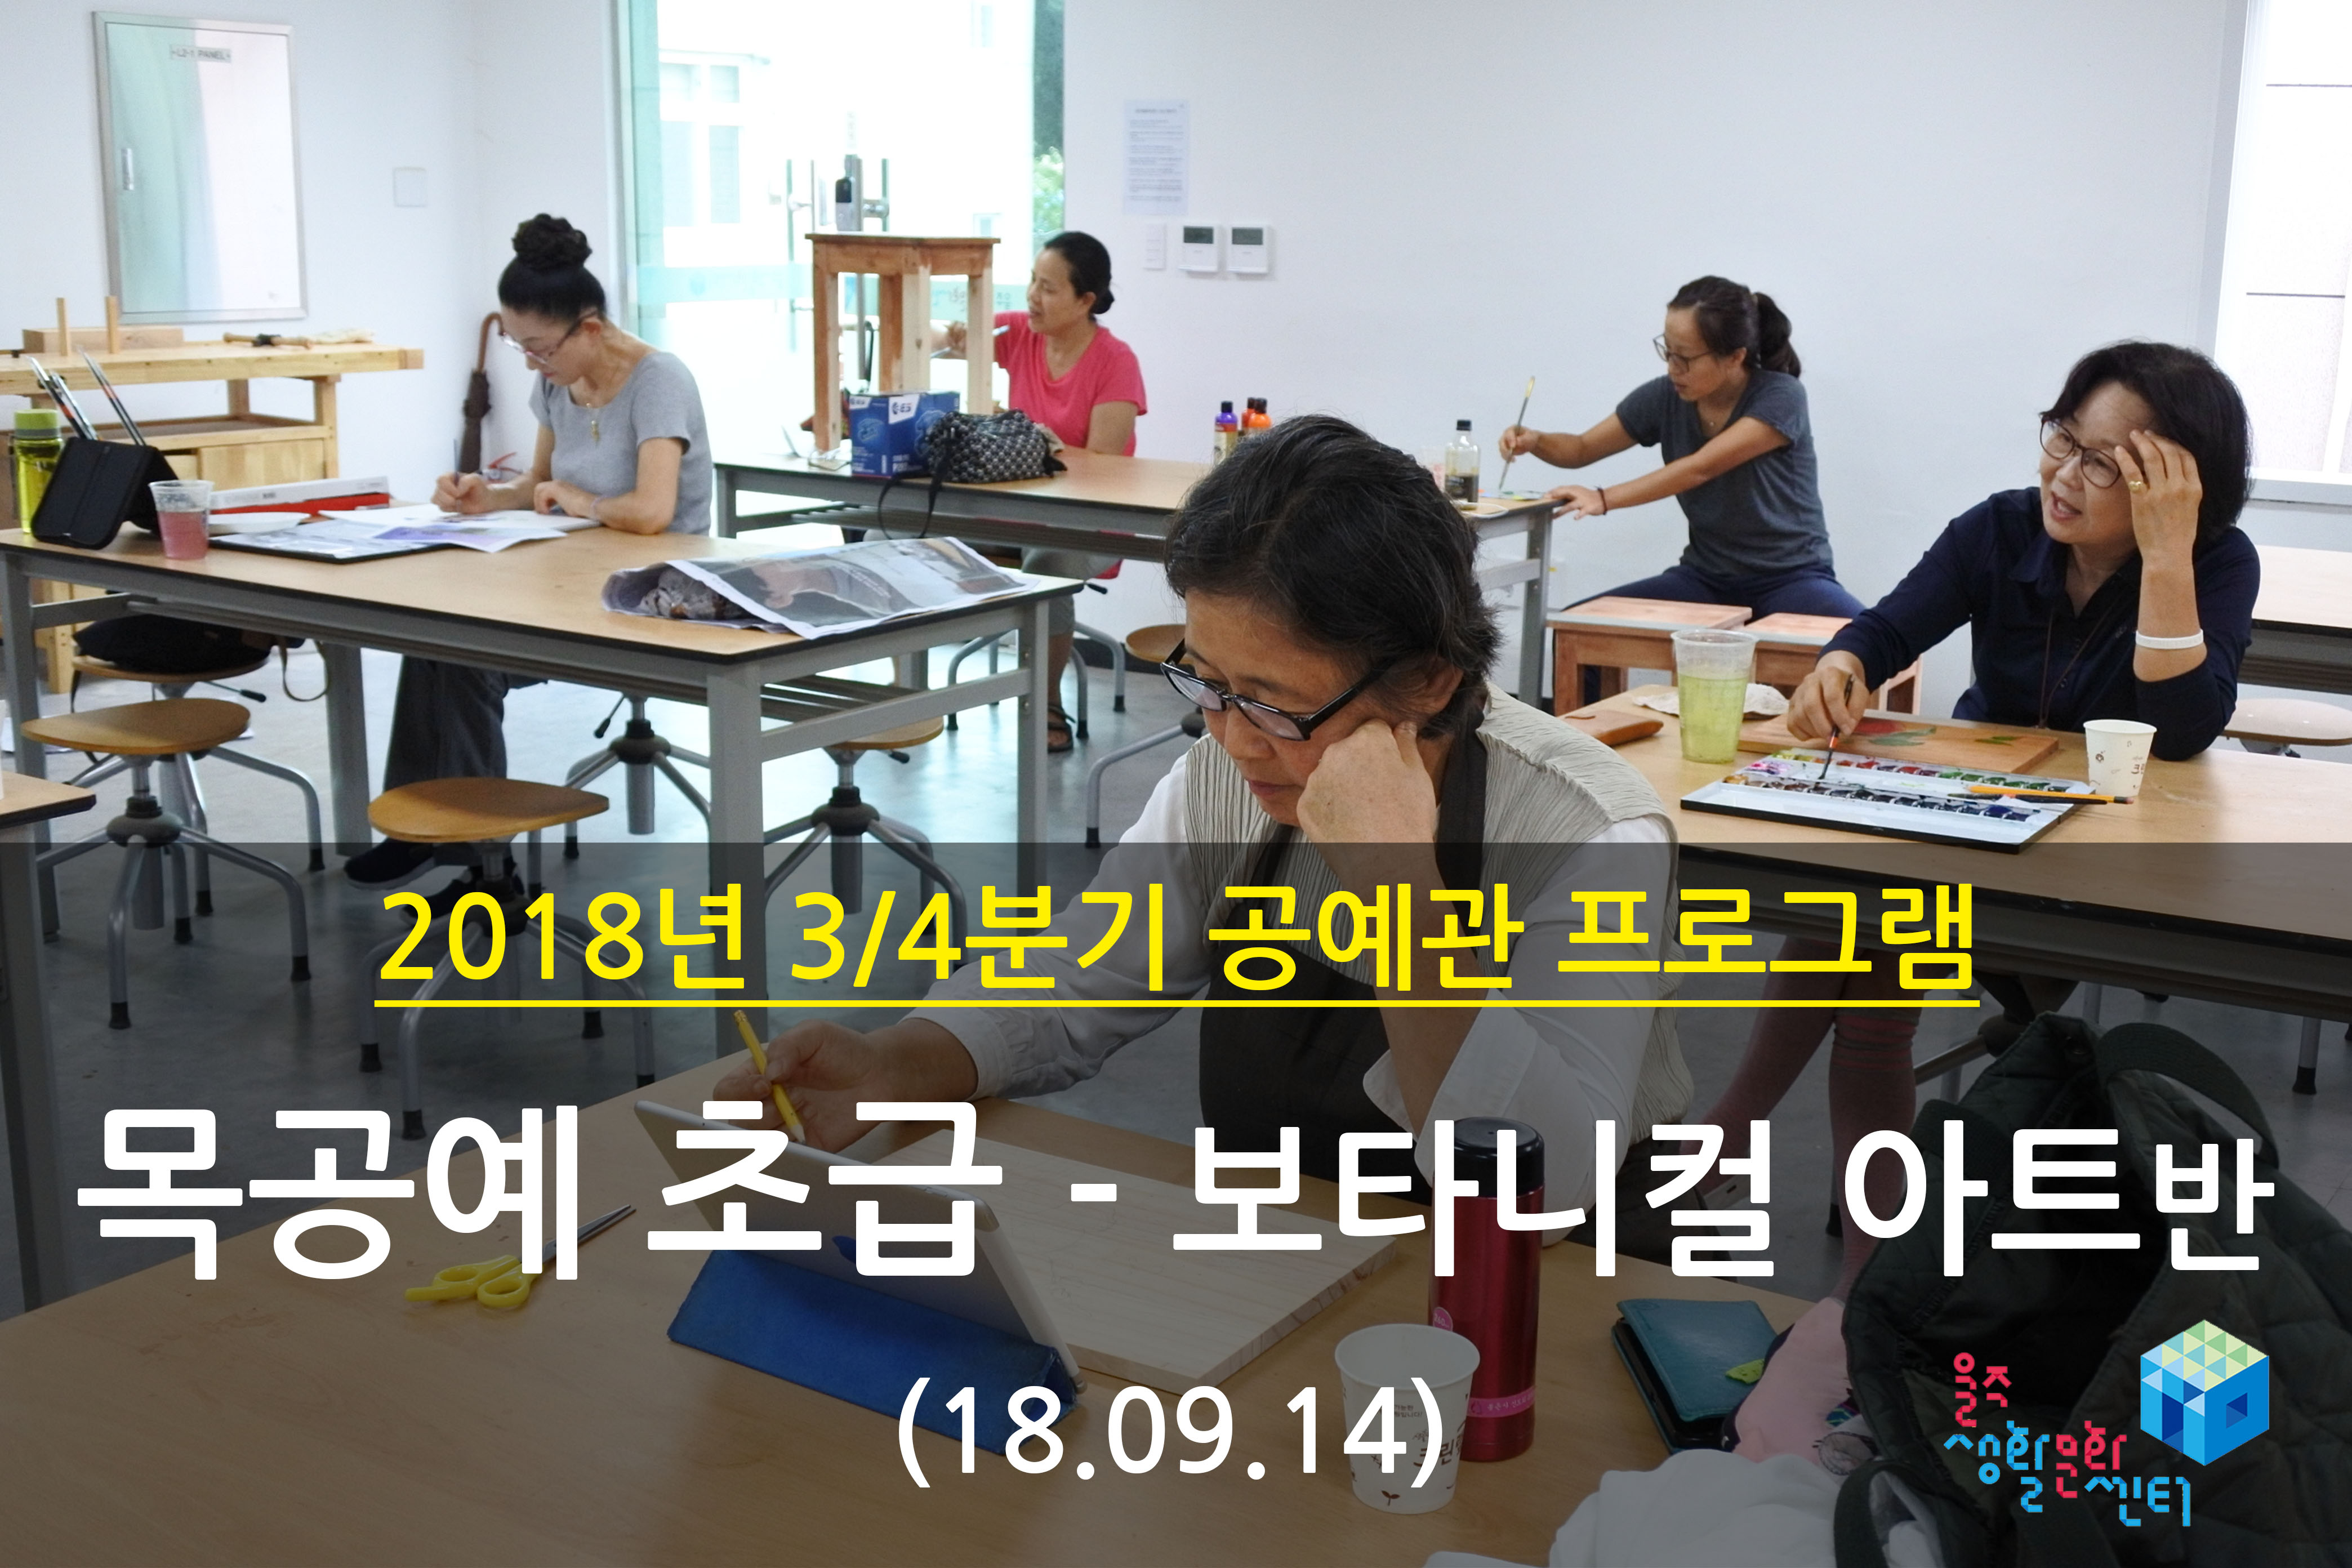 2018.09.14 _ 목공예 초급 - 보타니컬 아트반 _ 3/4분기 10주차 수업